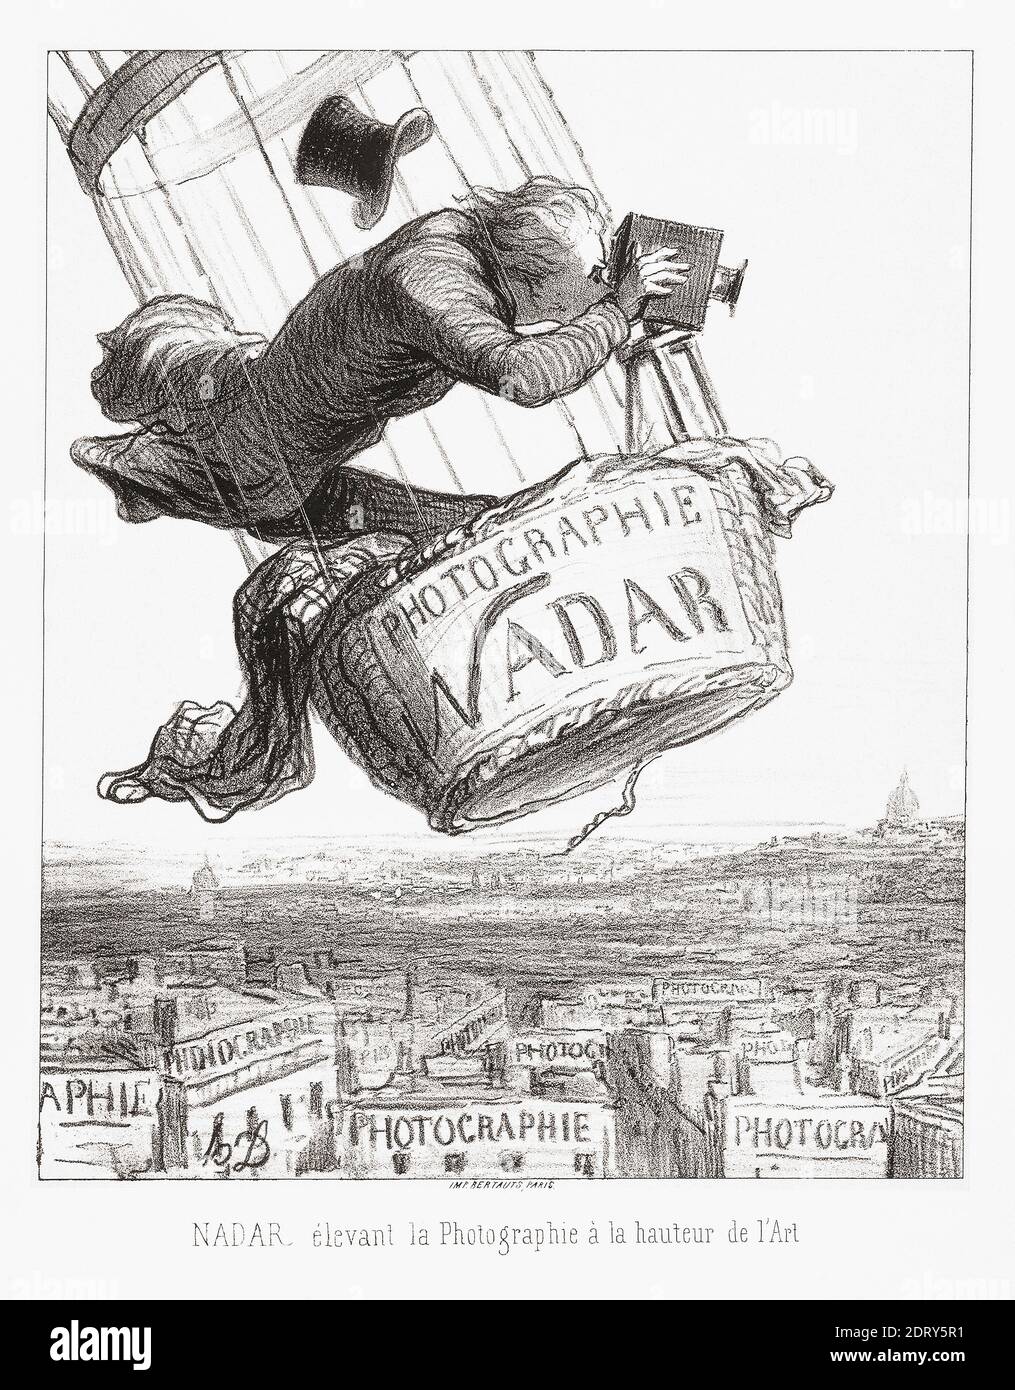 Nadar eleva la fotografia all'arte dopo un'opera di Honore Daumier della rivista francese le Boulevard, 25 maggio 1863. Nadar è stato lo pseudonimo del fotografo francese Gaspard-Félix Tournachon, 1820 – 1910. Tra i suoi numerosi successi come fotografo, Nadar è stata la prima persona a scattare fotografie aeree. Foto Stock